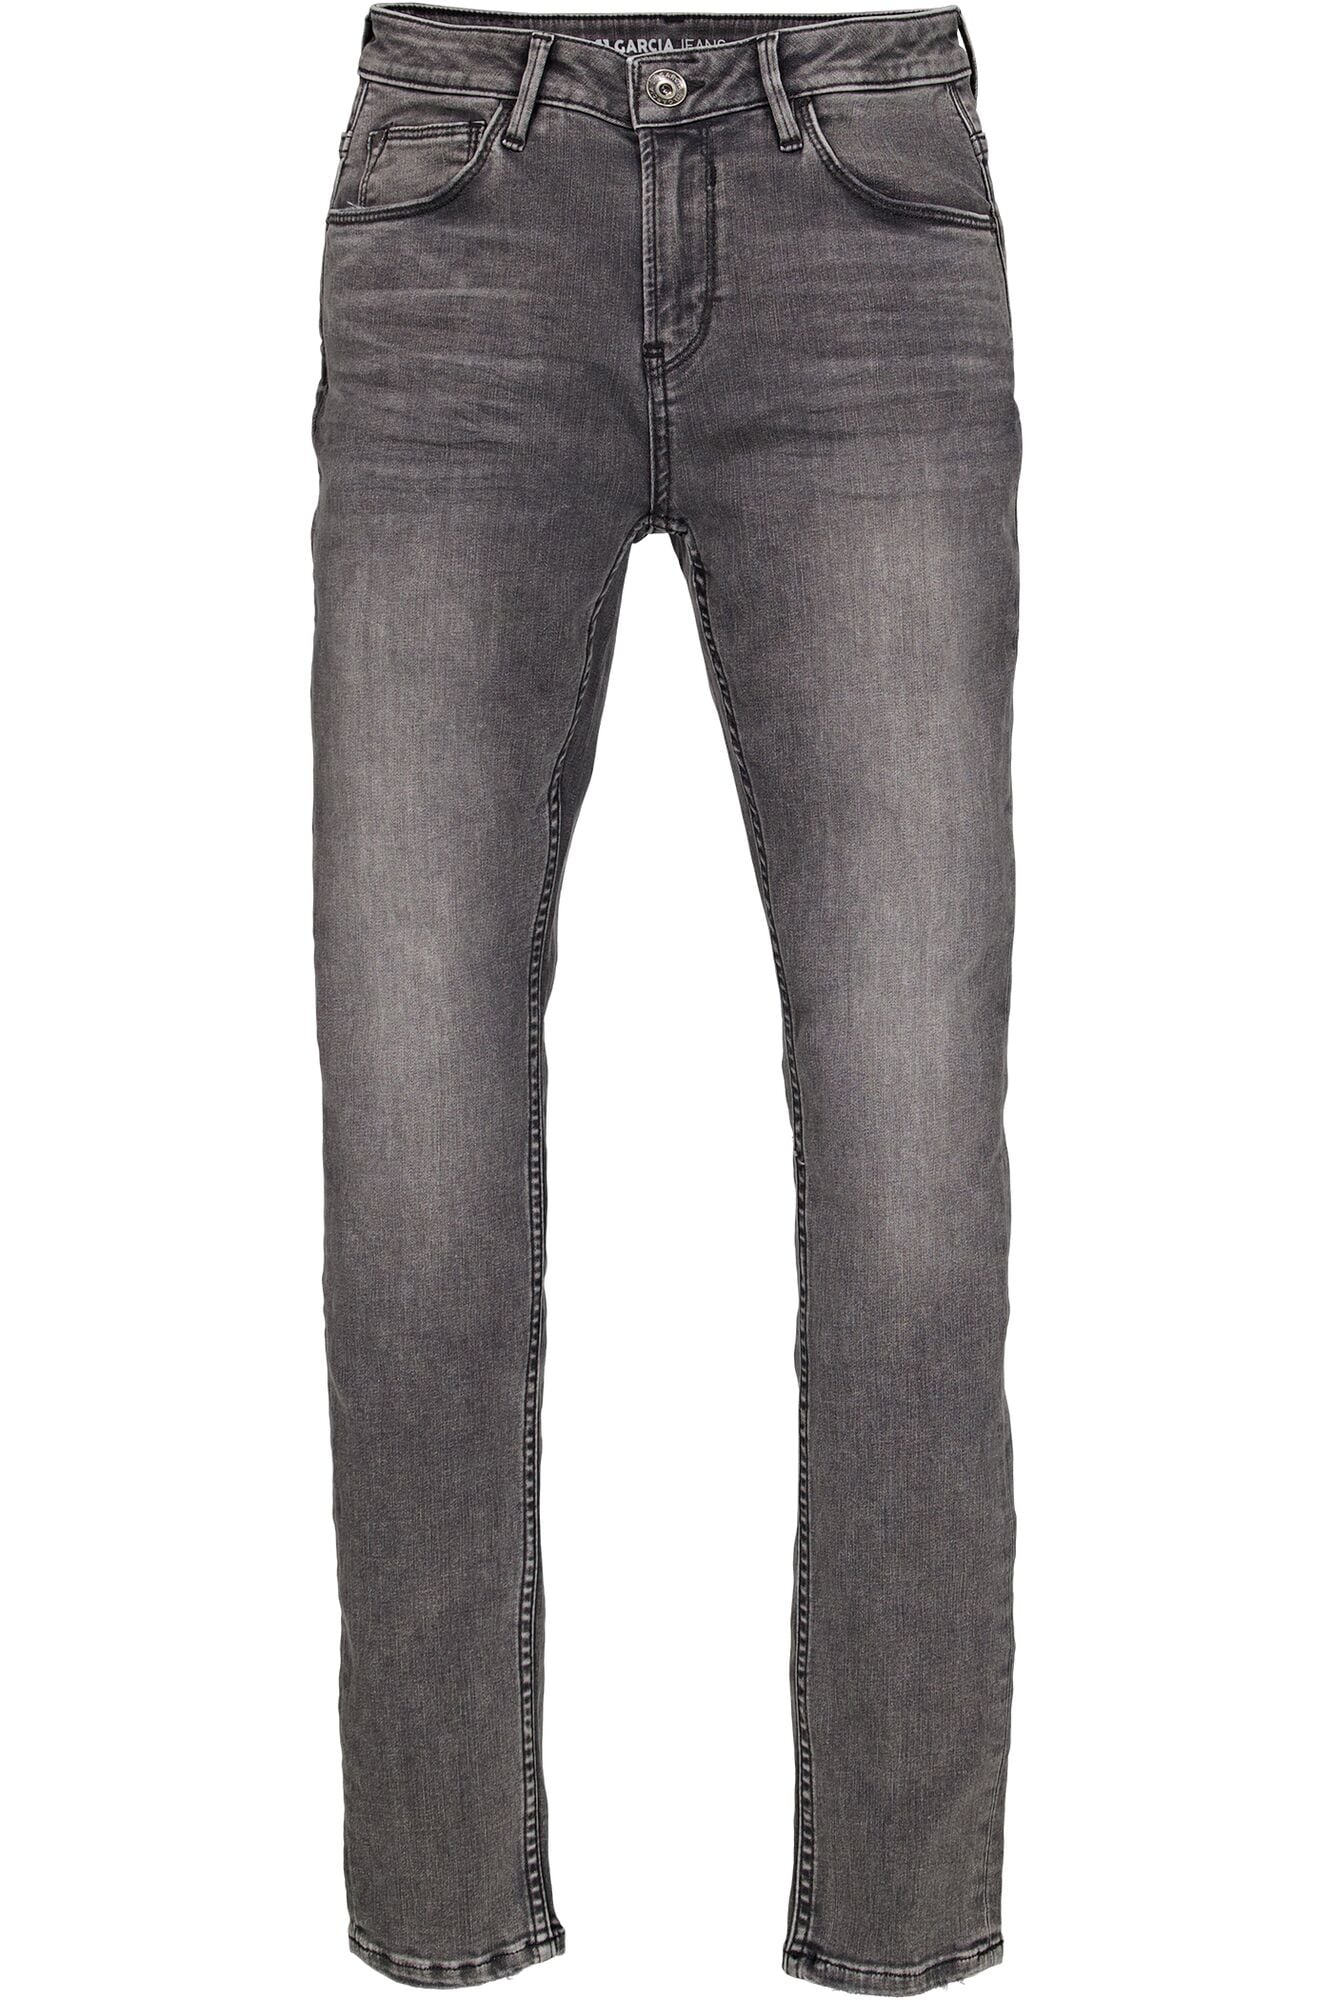 ♕ Garcia High-waist-Jeans »Celia superslim« versandkostenfrei kaufen | Stufenröcke